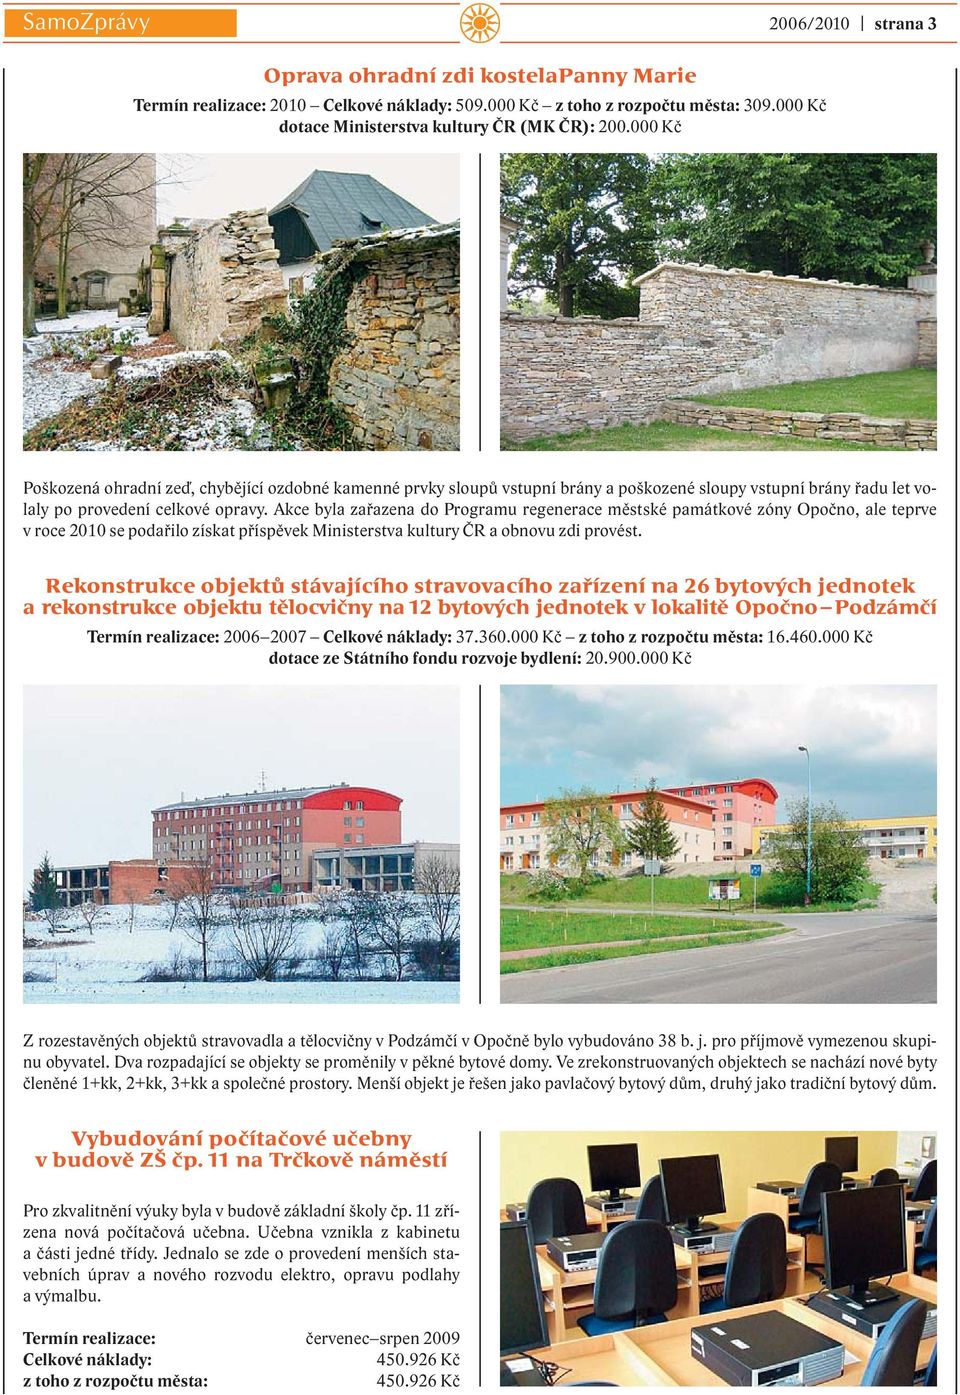 Akce byla zařazena do Programu regenerace městské památkové zóny Opočno, ale teprve v roce 2010 se podařilo získat příspěvek Ministerstva kultury ČR a obnovu zdi provést.